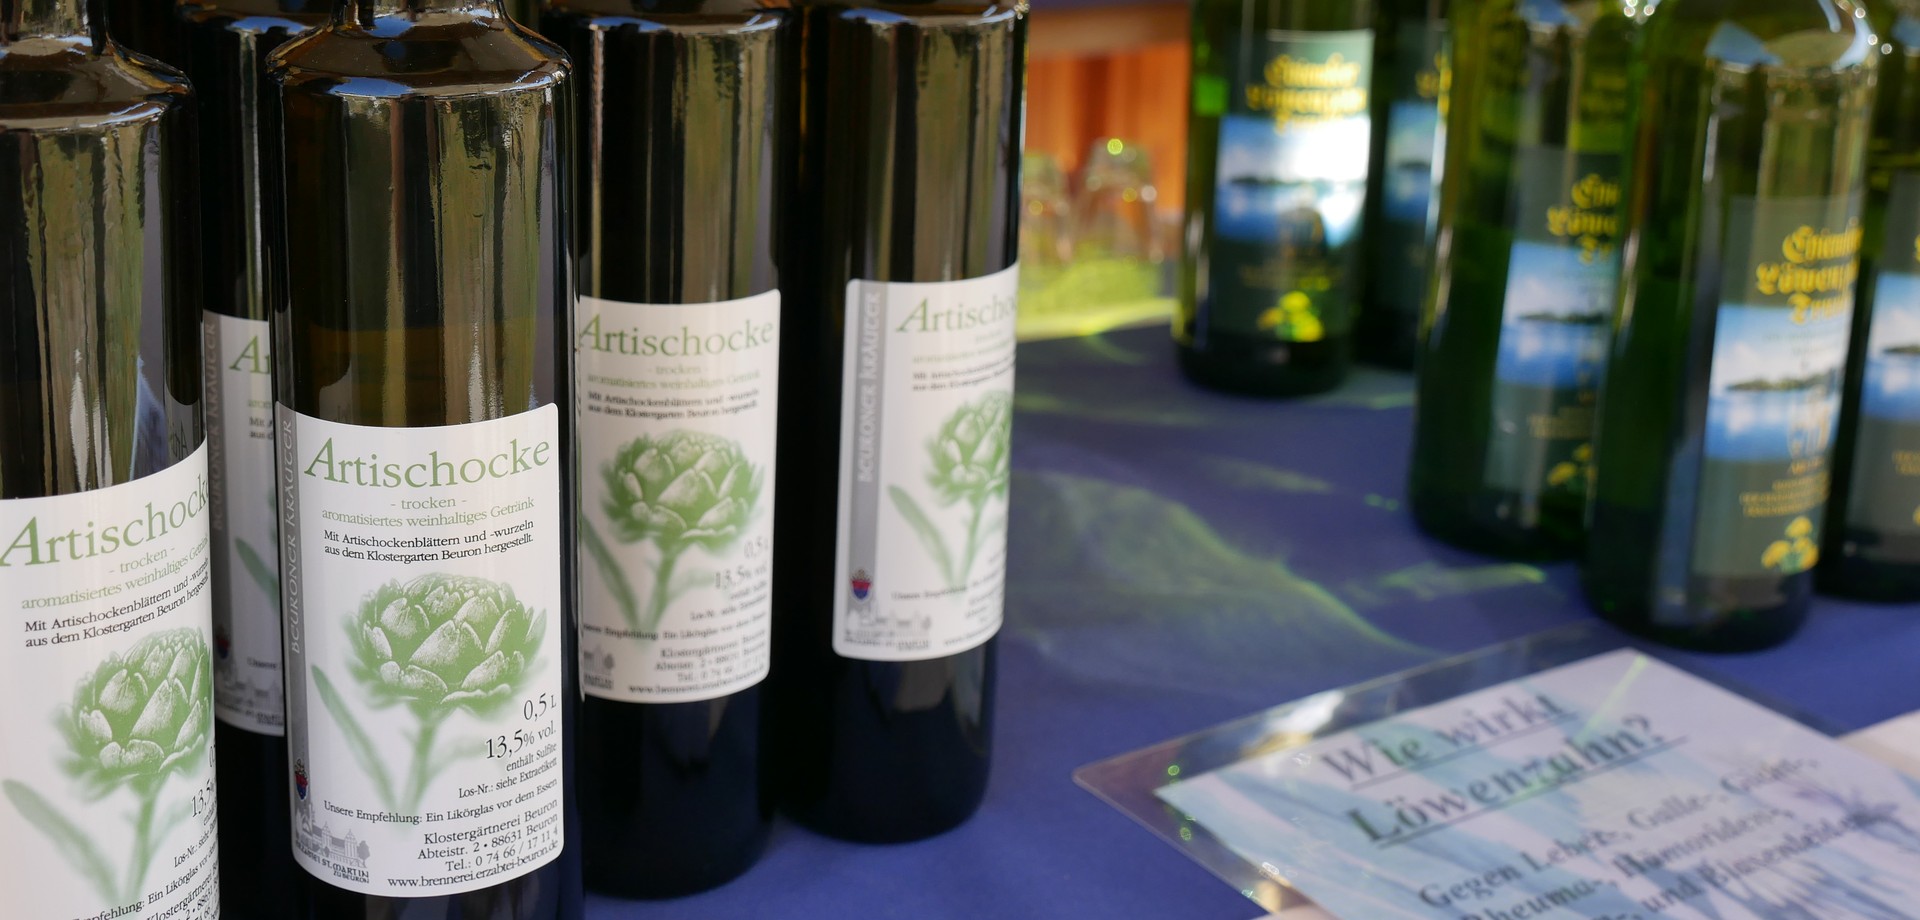 Auf dem Foto sieht man den Artischockenwein - eine Spezialität der Erzabtei Beuron. 

Foto: LWL/Schellenberg